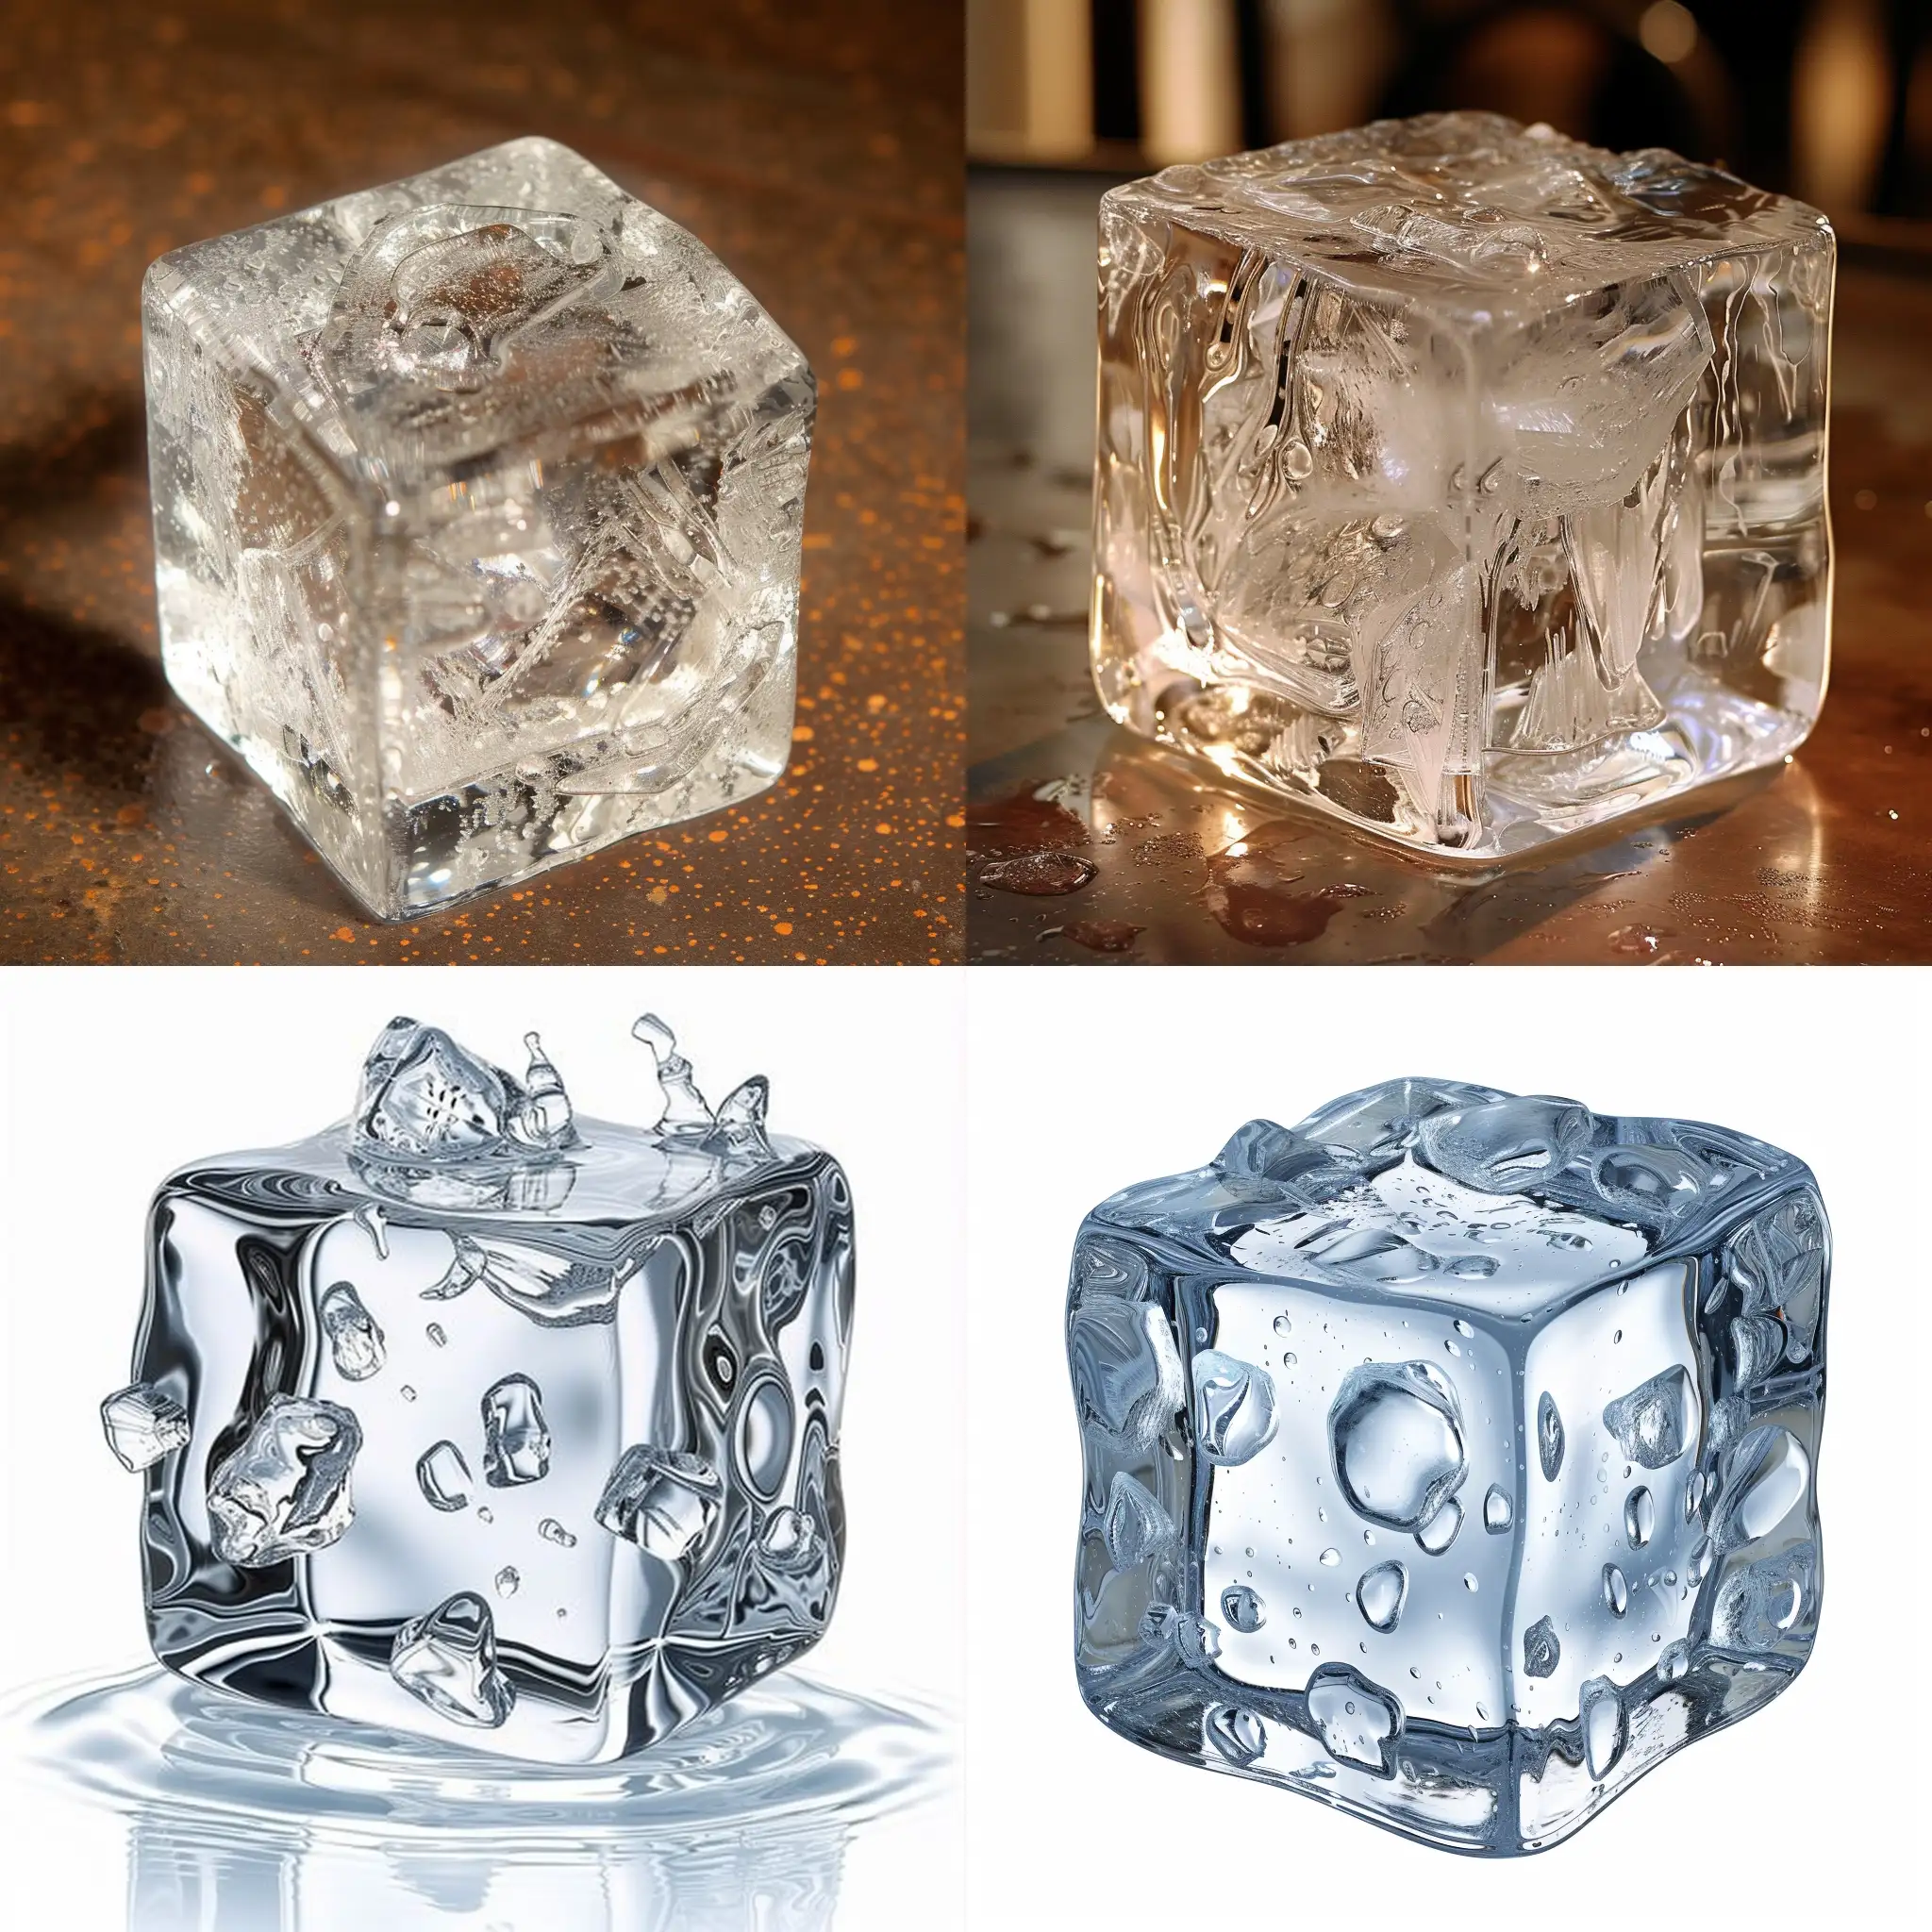 Melting-Ice-Cube-on-Reflective-Surface